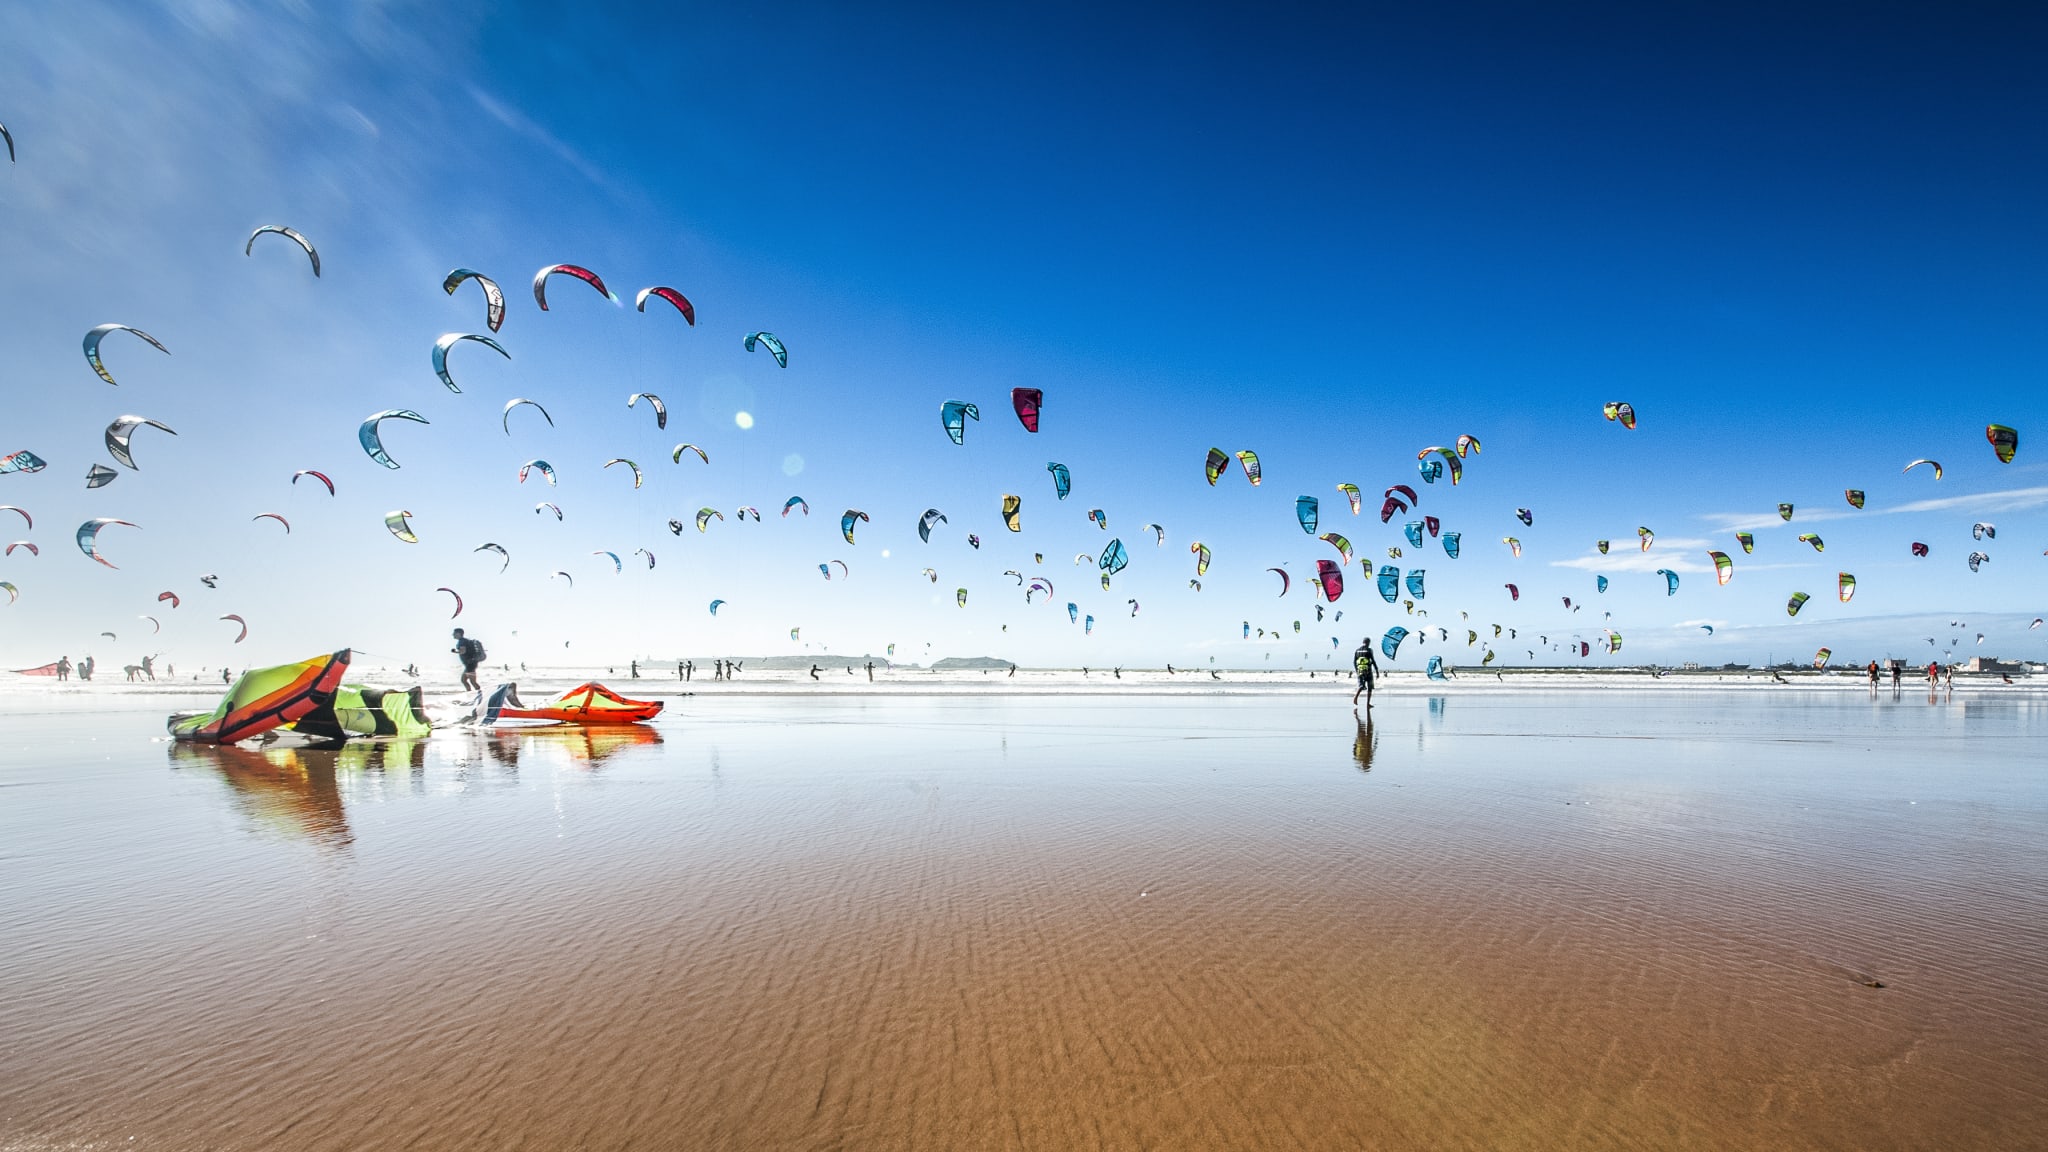 Riesige Menge von Kite- und Windsurfern an einem flachen Sandstrand in Marokko © iStock.com/Szymon Barylski